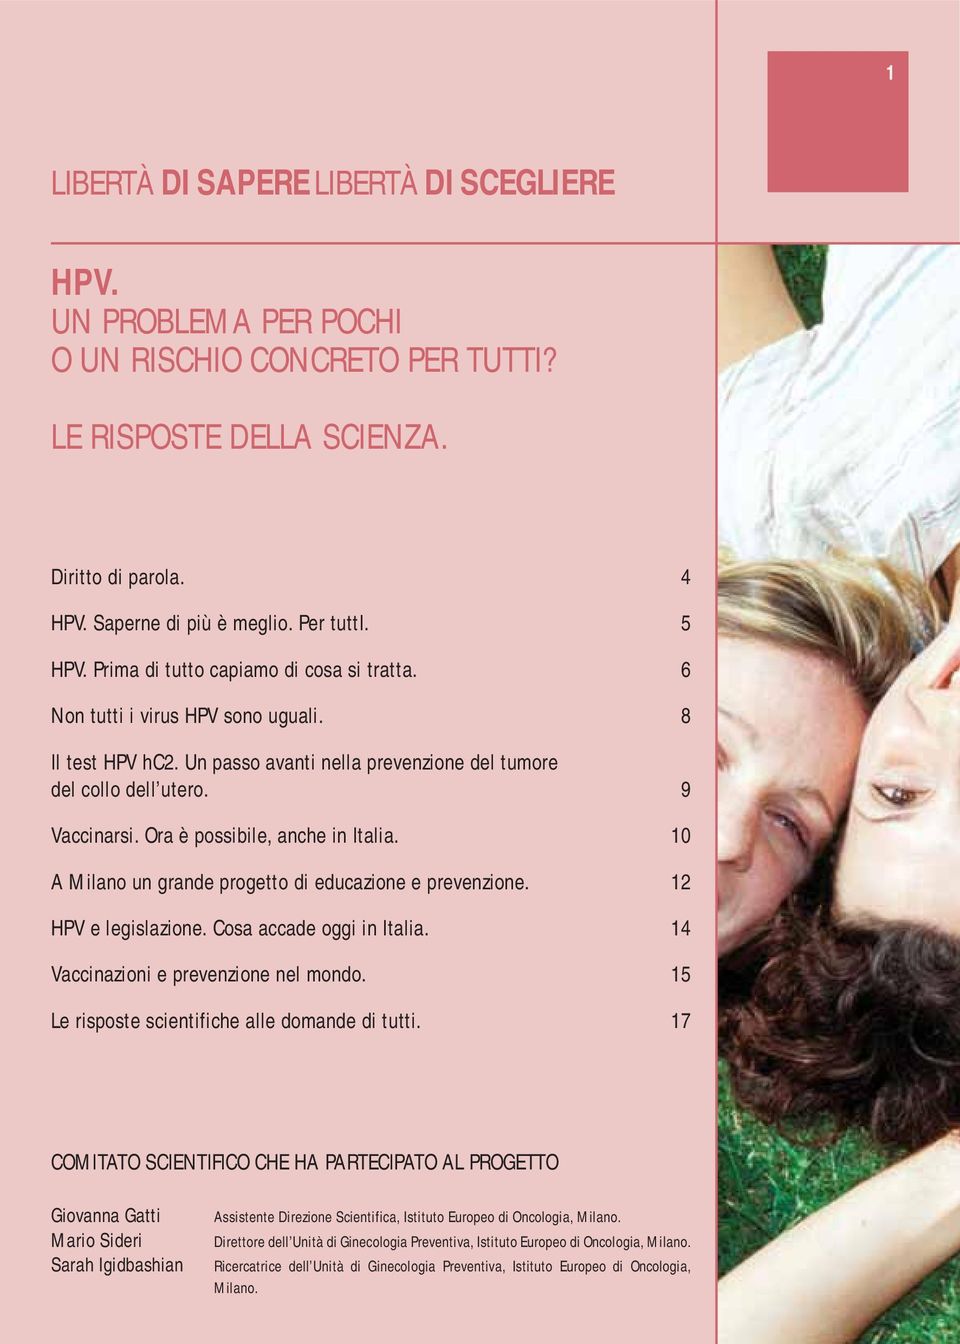 Ora è possibile, anche in Italia. 10 A Milano un grande progetto di educazione e prevenzione. 12 HPV e legislazione. Cosa accade oggi in Italia. 14 Vaccinazioni e prevenzione nel mondo.